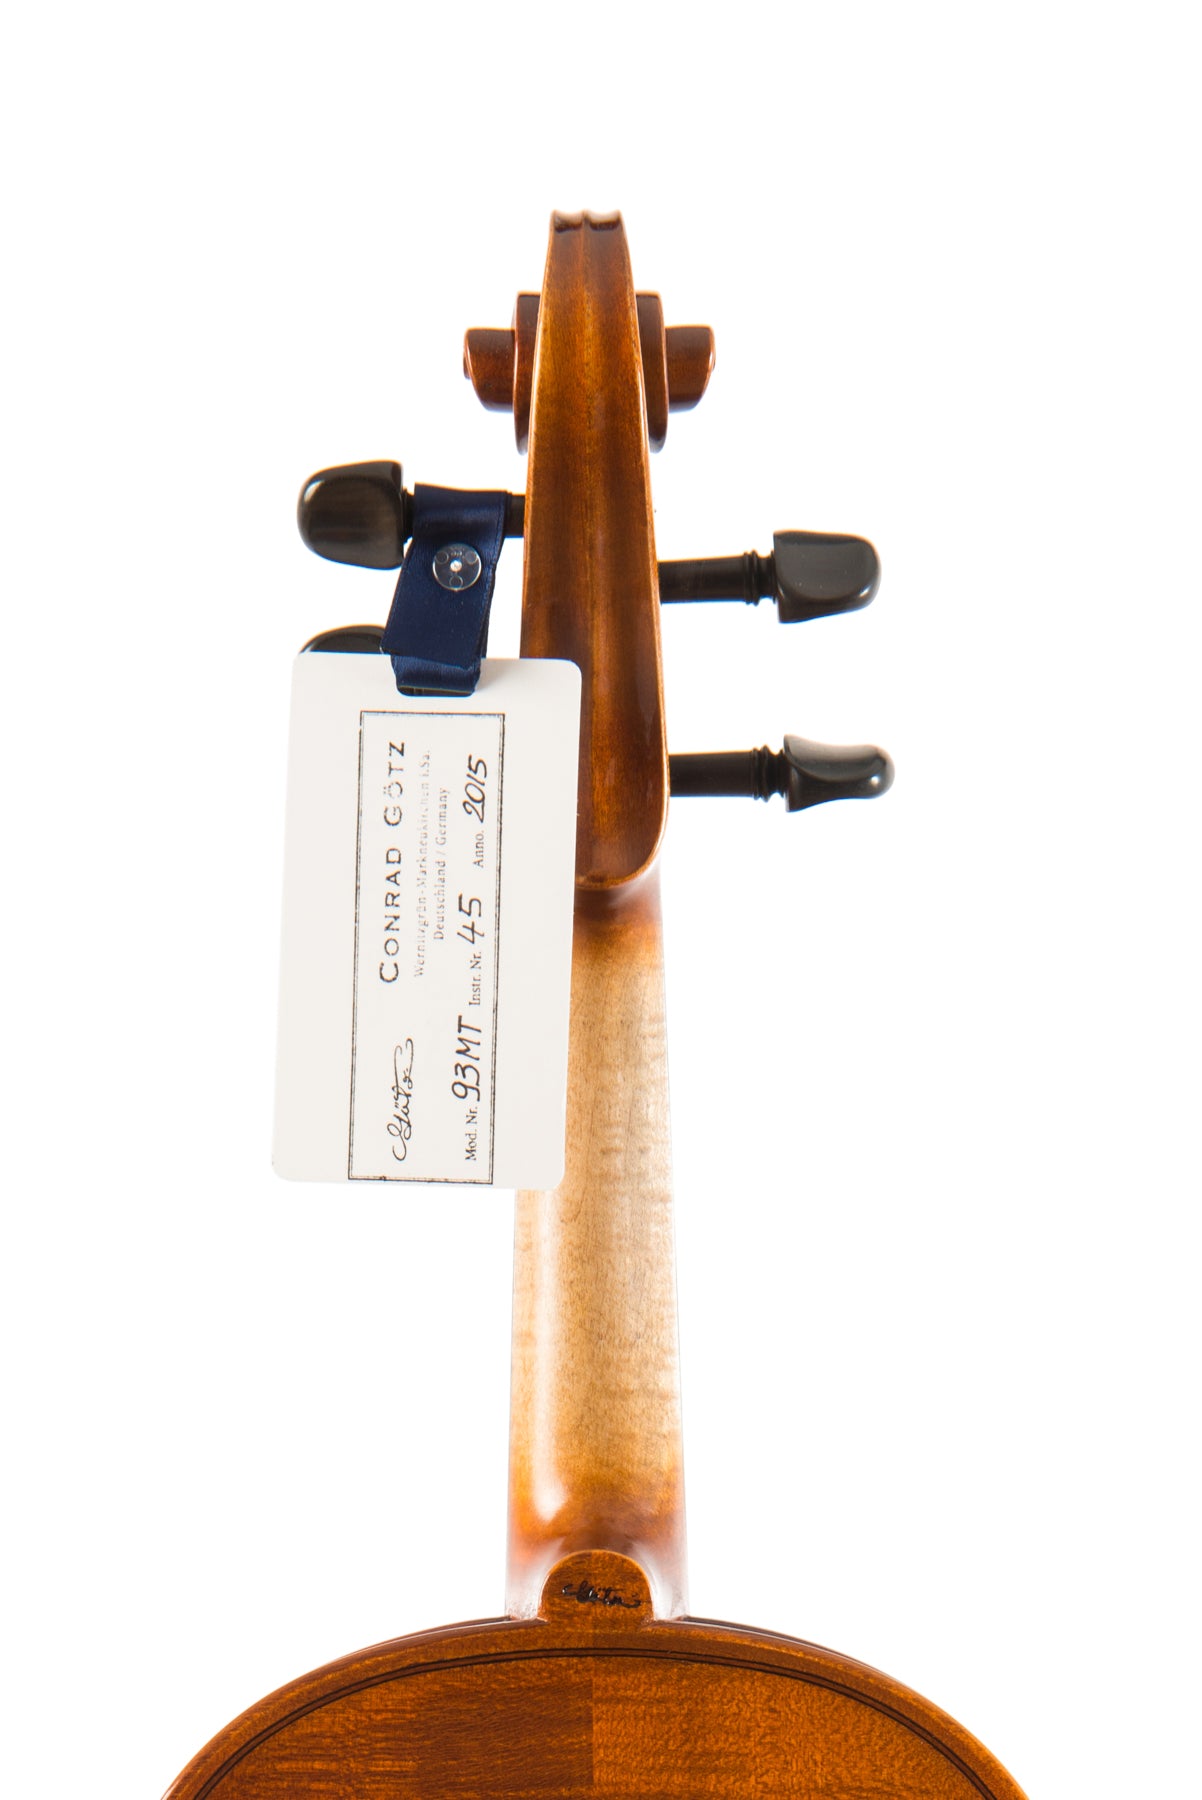 MENUETT Violine #93 MT